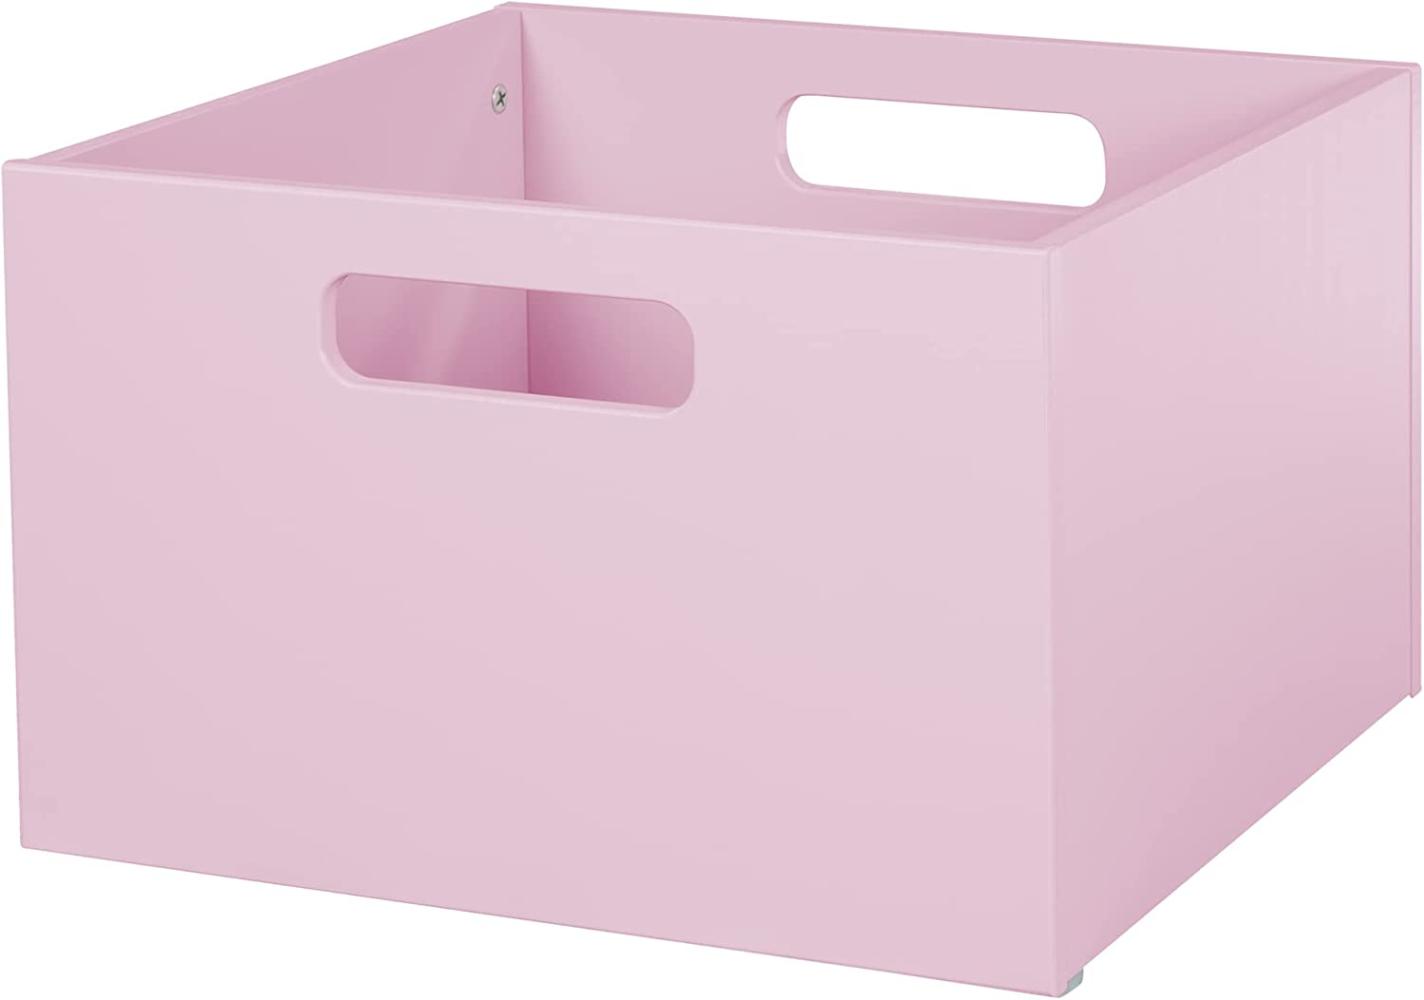 roba Aufbewahrungsbox Aufbewahrungskorb für Kinderzimmer, Stauraum für Spielzeug, Deko, Farbe: pink Bild 1